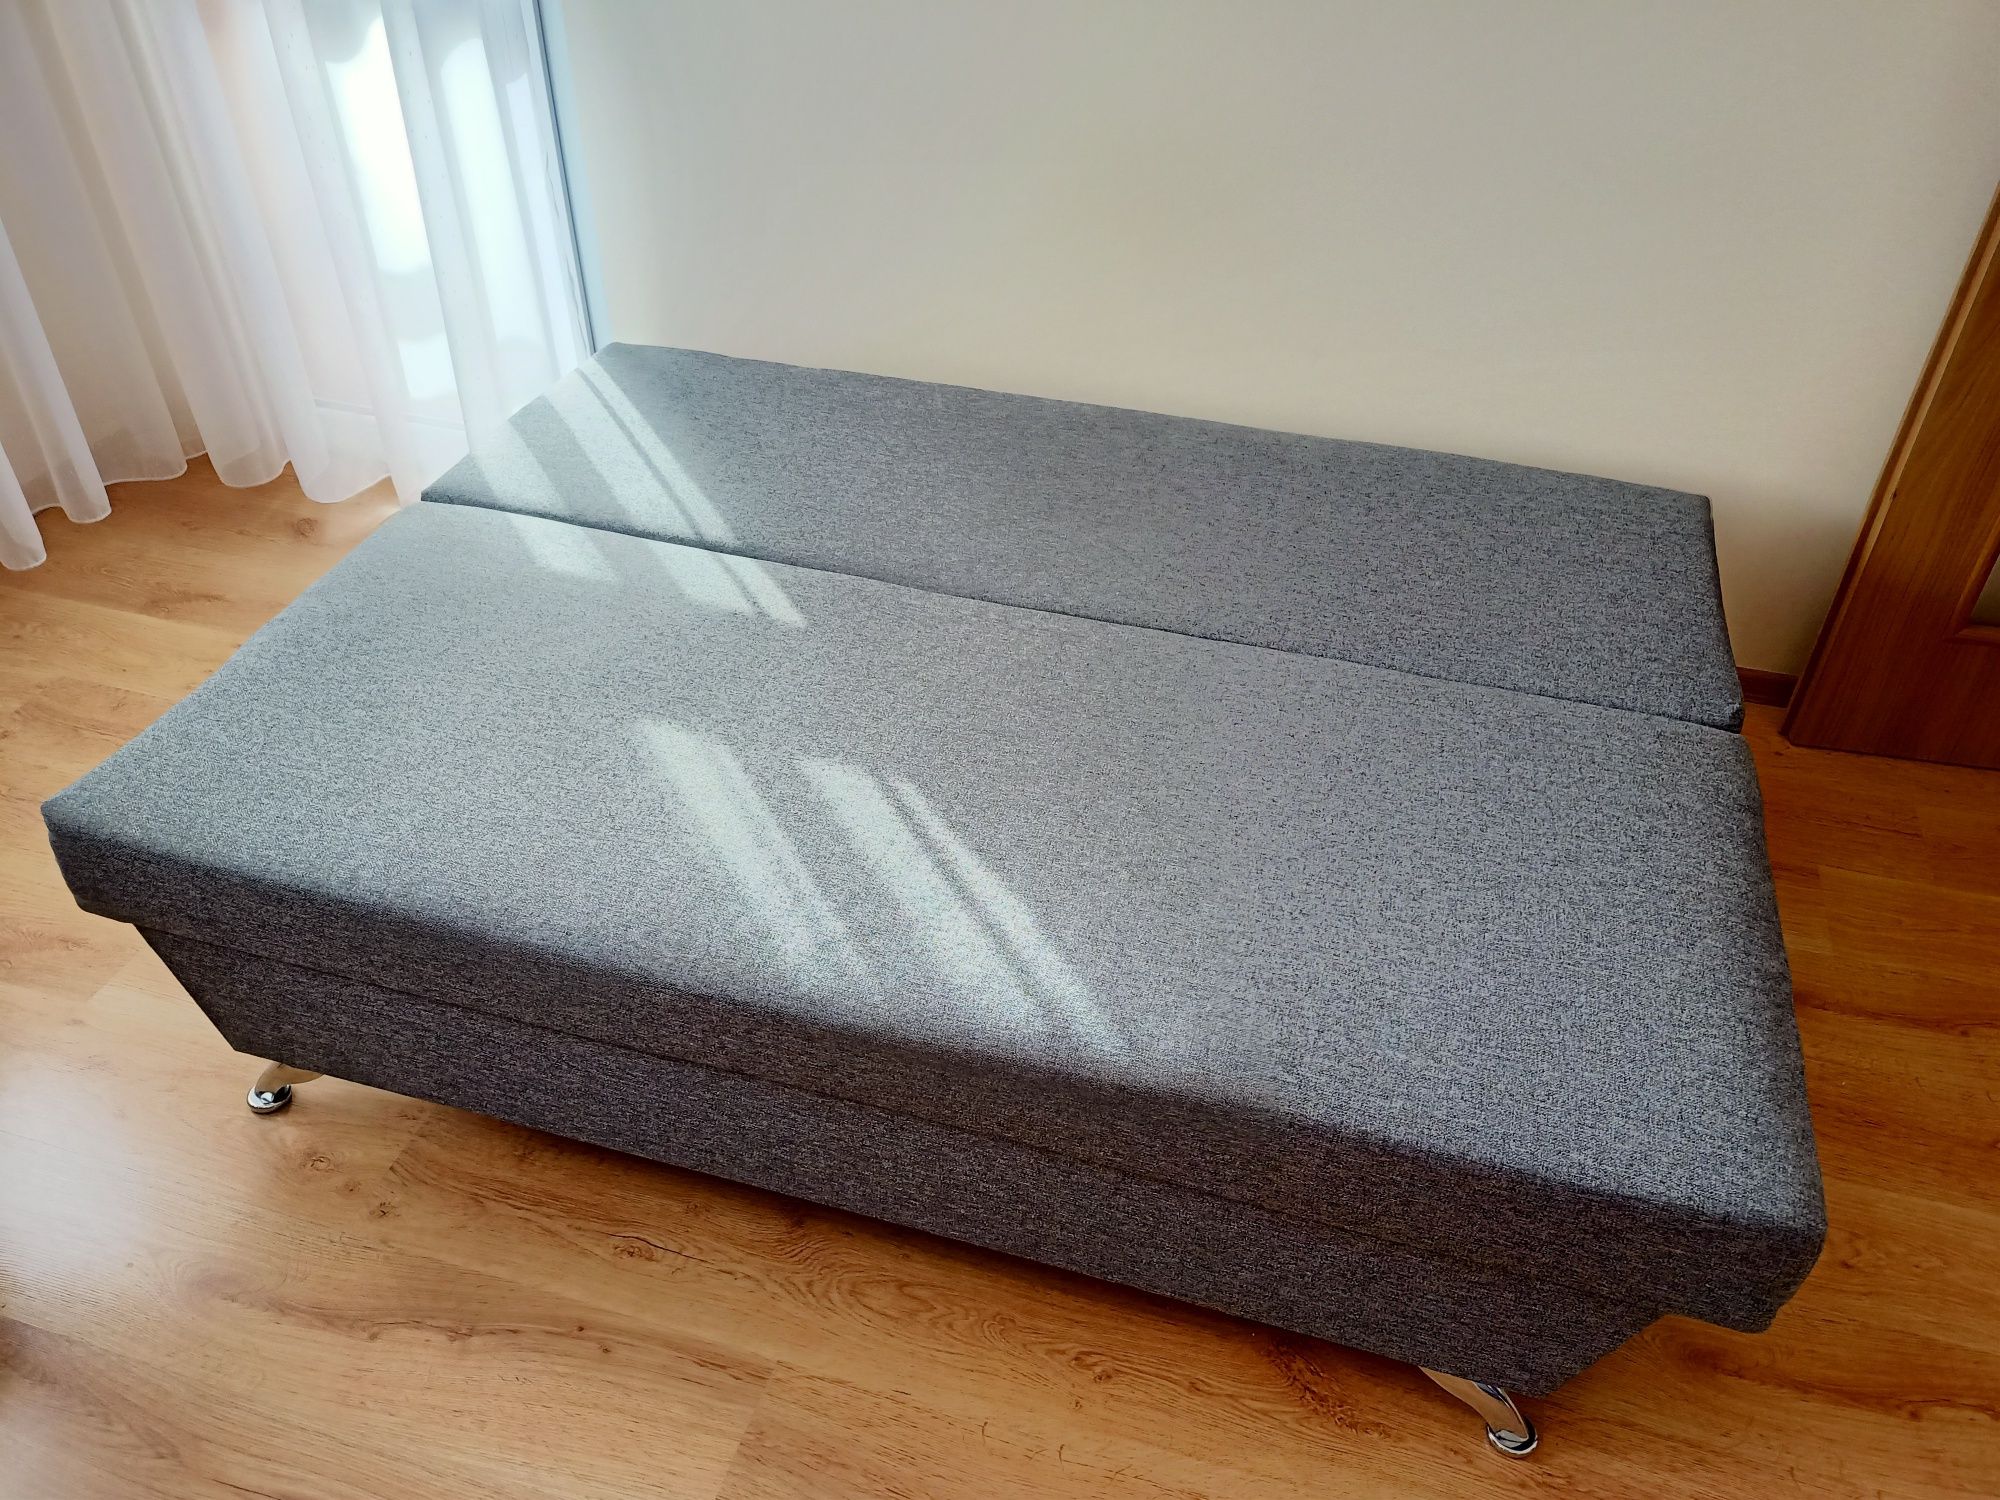 Kanapa - łóżko, sofa